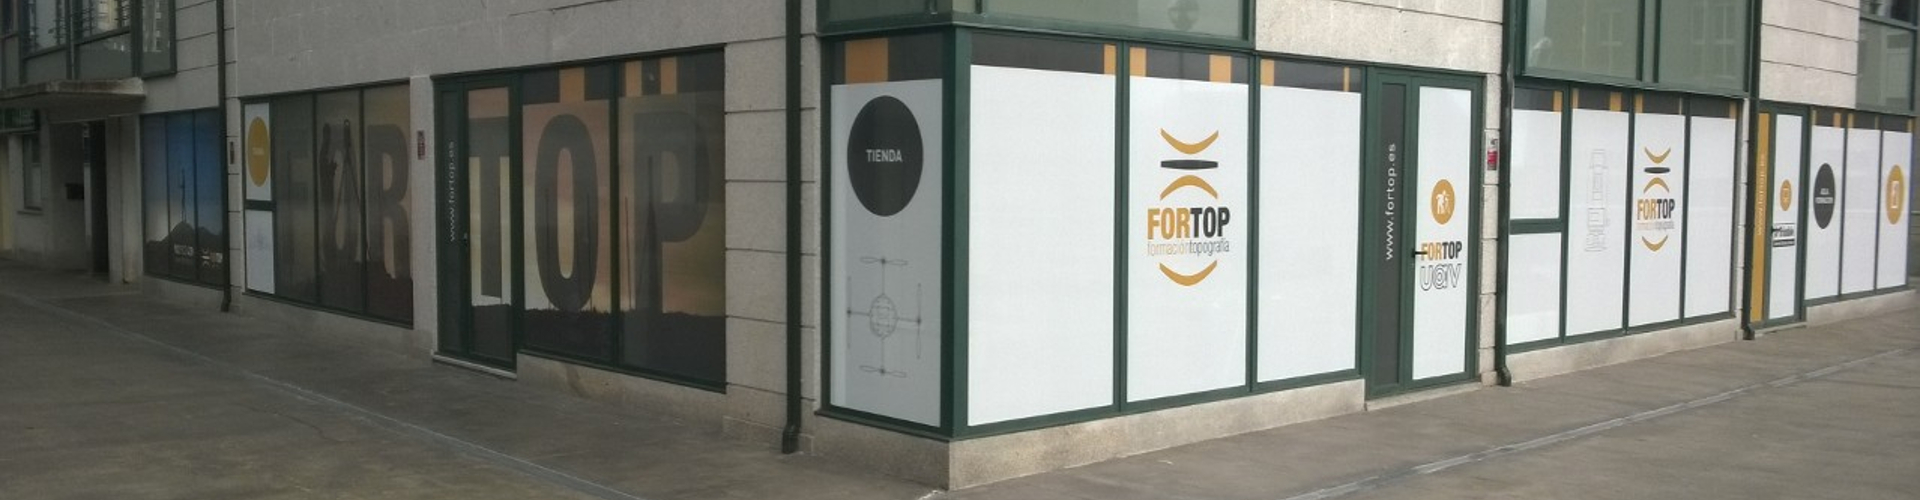 cabecera empresa Fortop topografía en Lugo